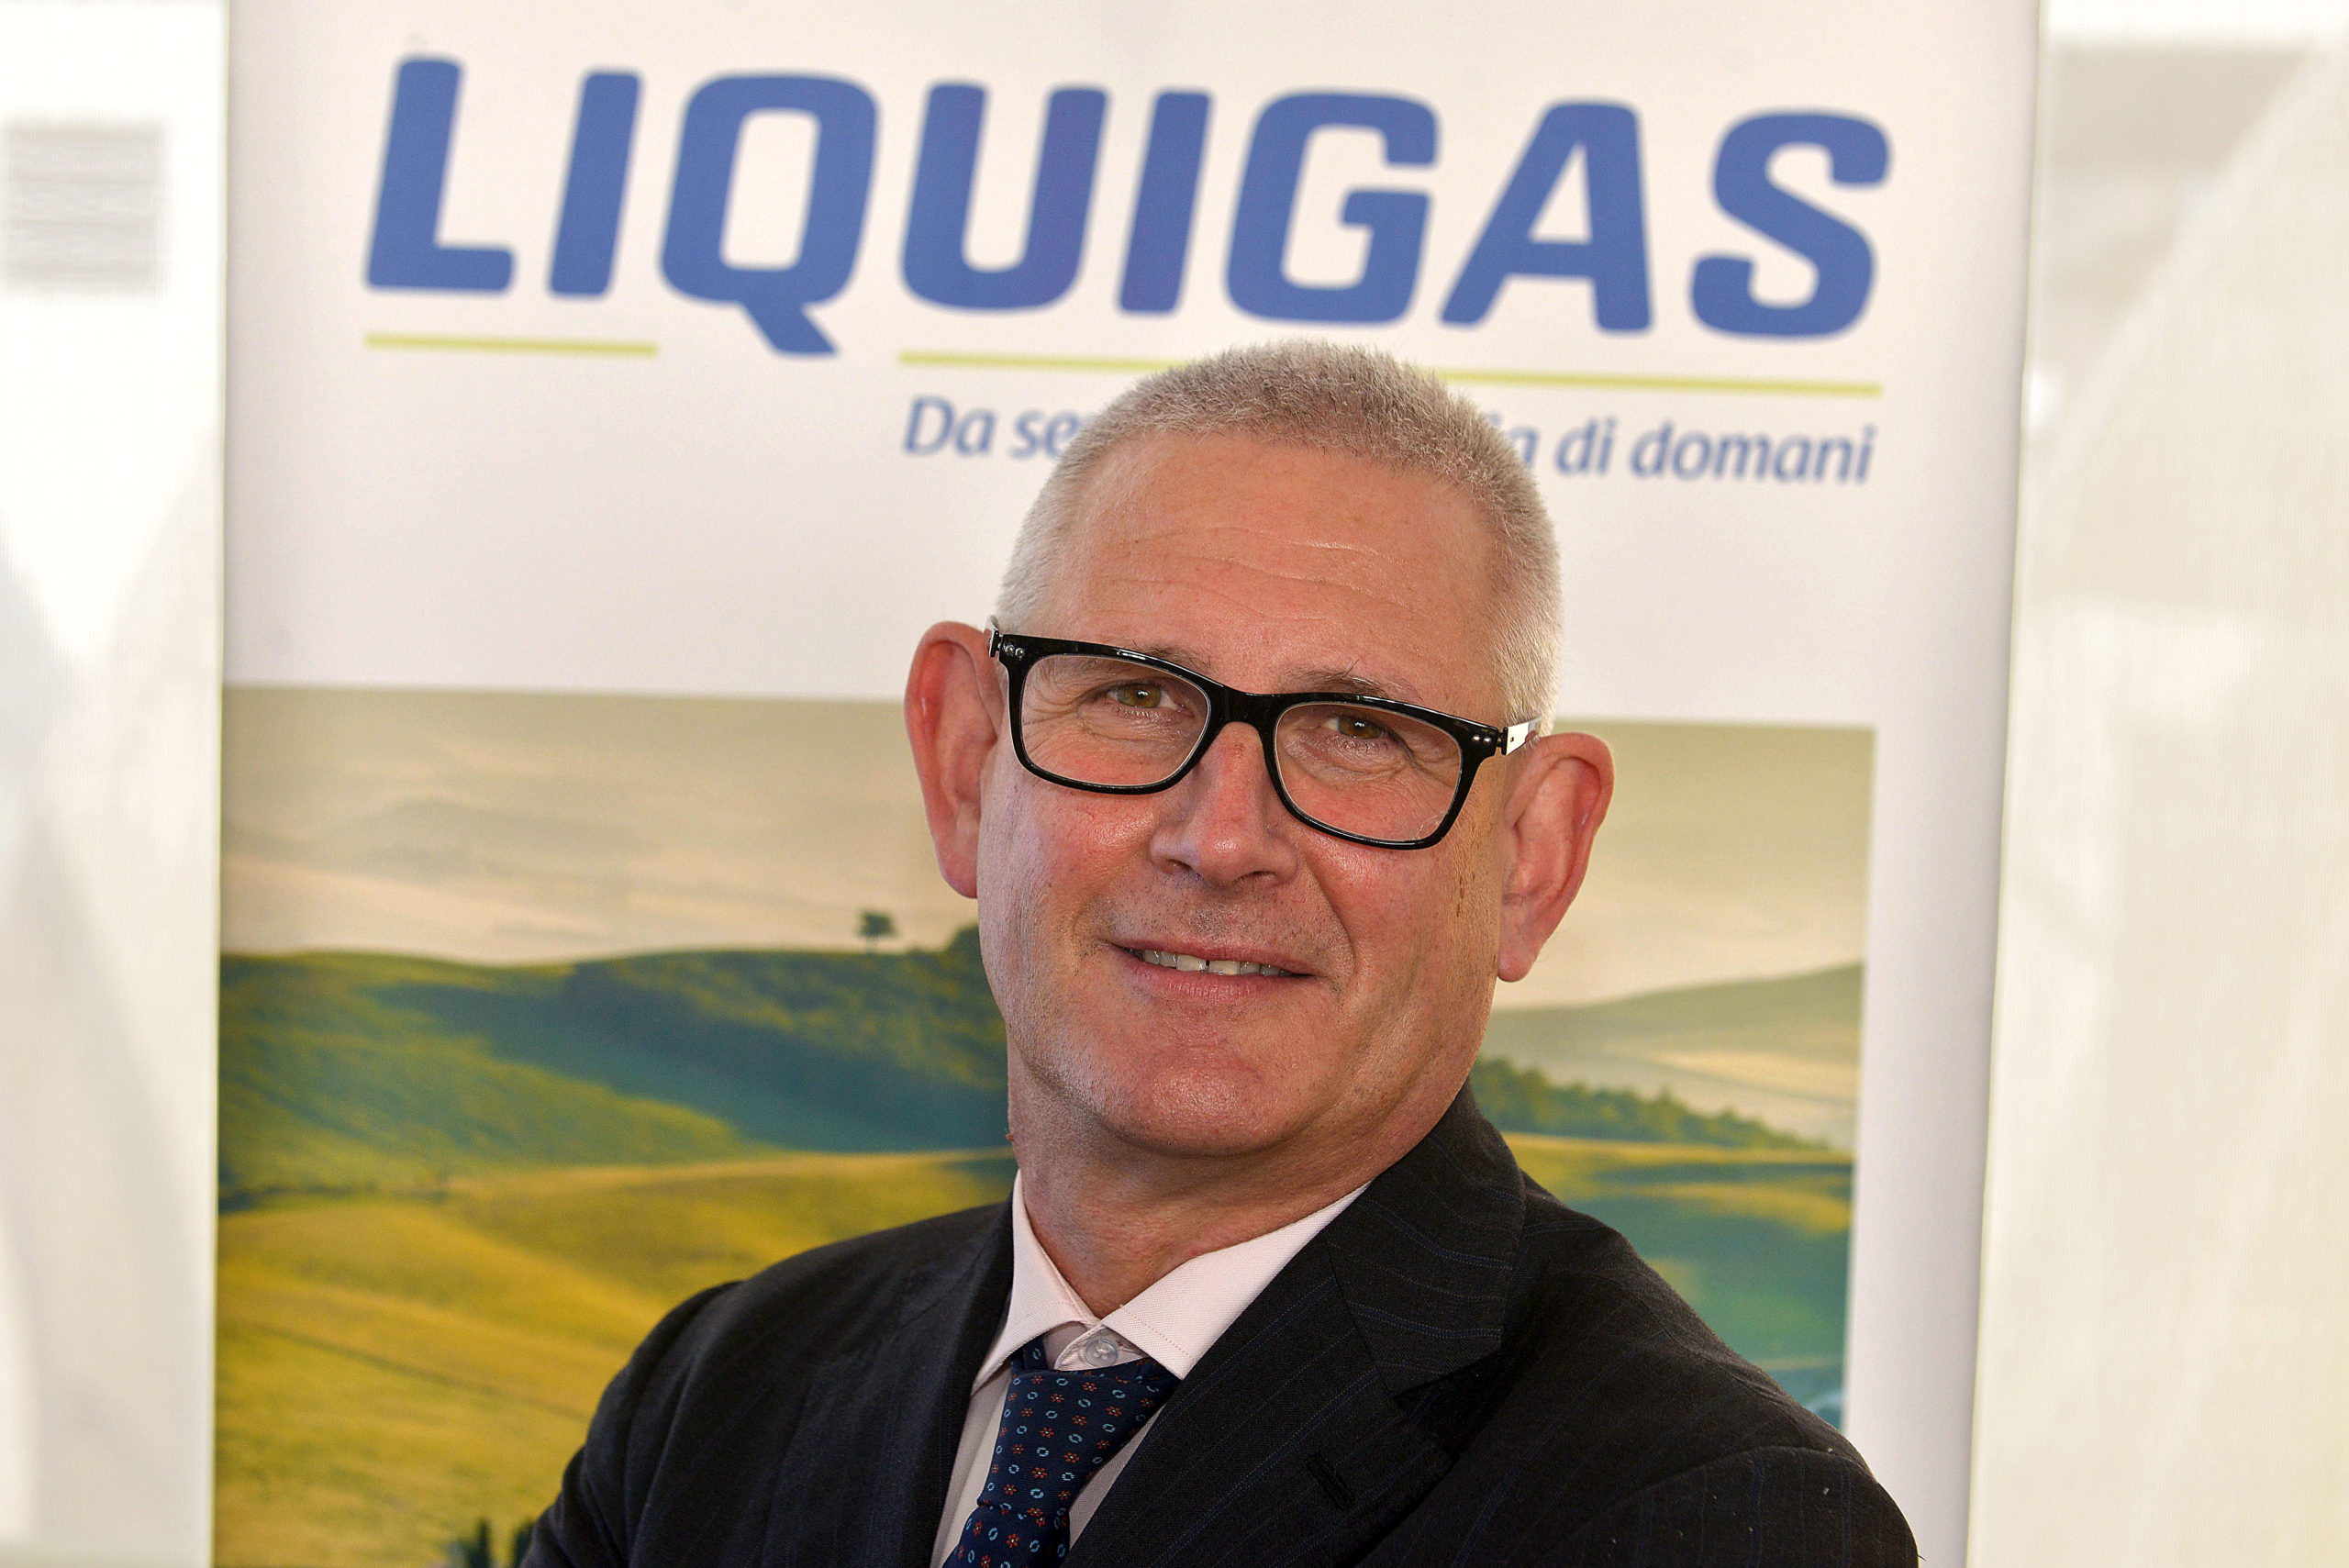 Liquigas acquisisce ramo gpl da Società Italiana Gas Liquidi